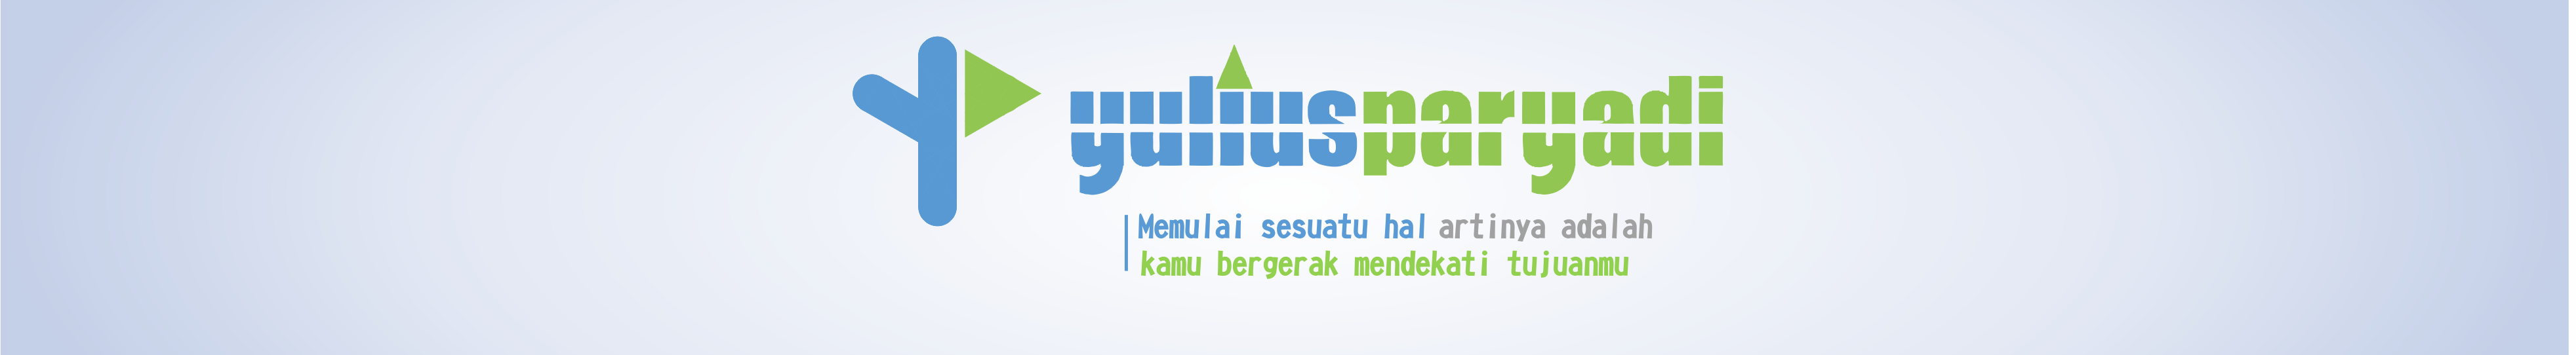 Yulius Paryadi's profile banner